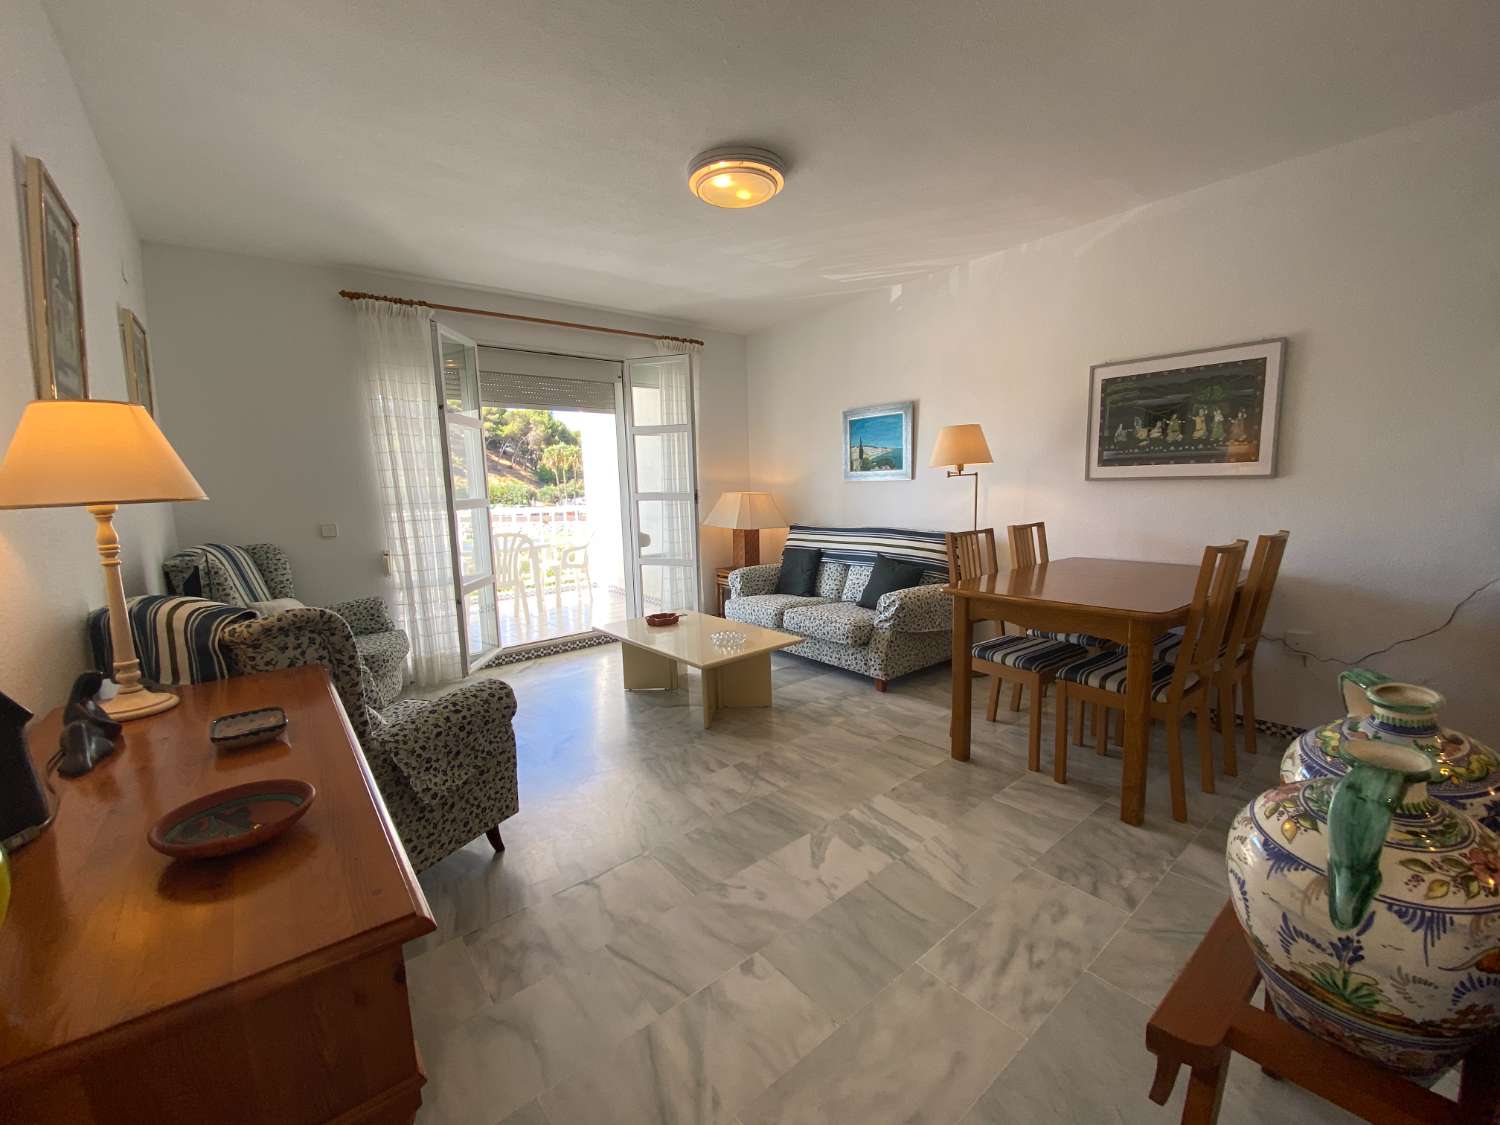 Excellent appartement de 2 chambres avec vue sur la mer à Fuengirola